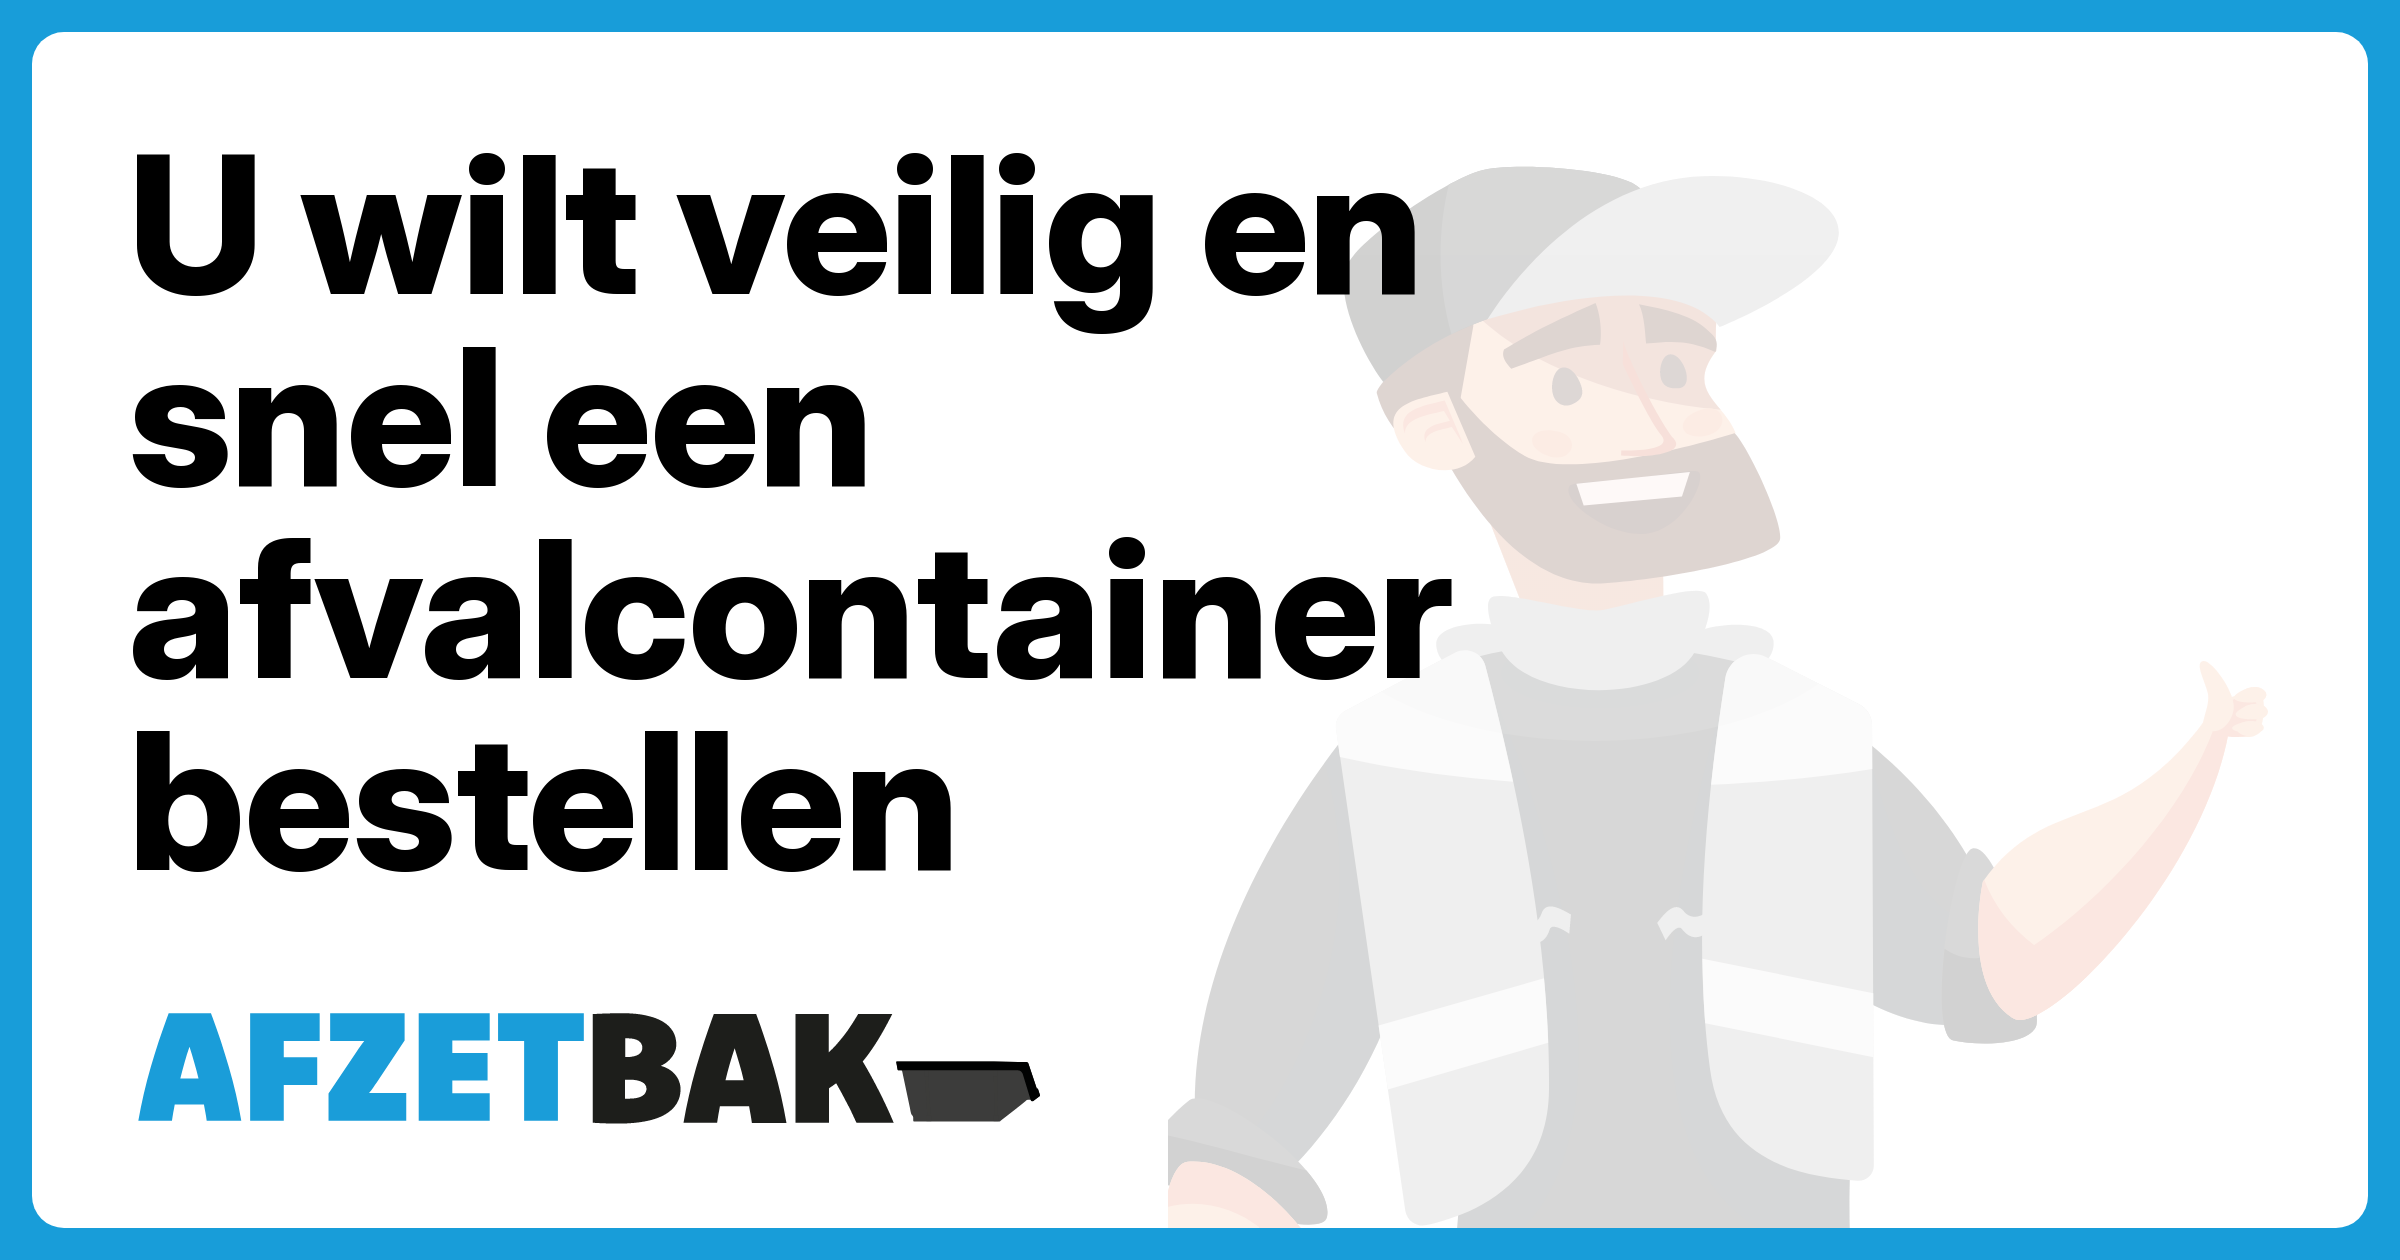 U wilt veilig en snel een afvalcontainer bestellen - Afzetbak.nl